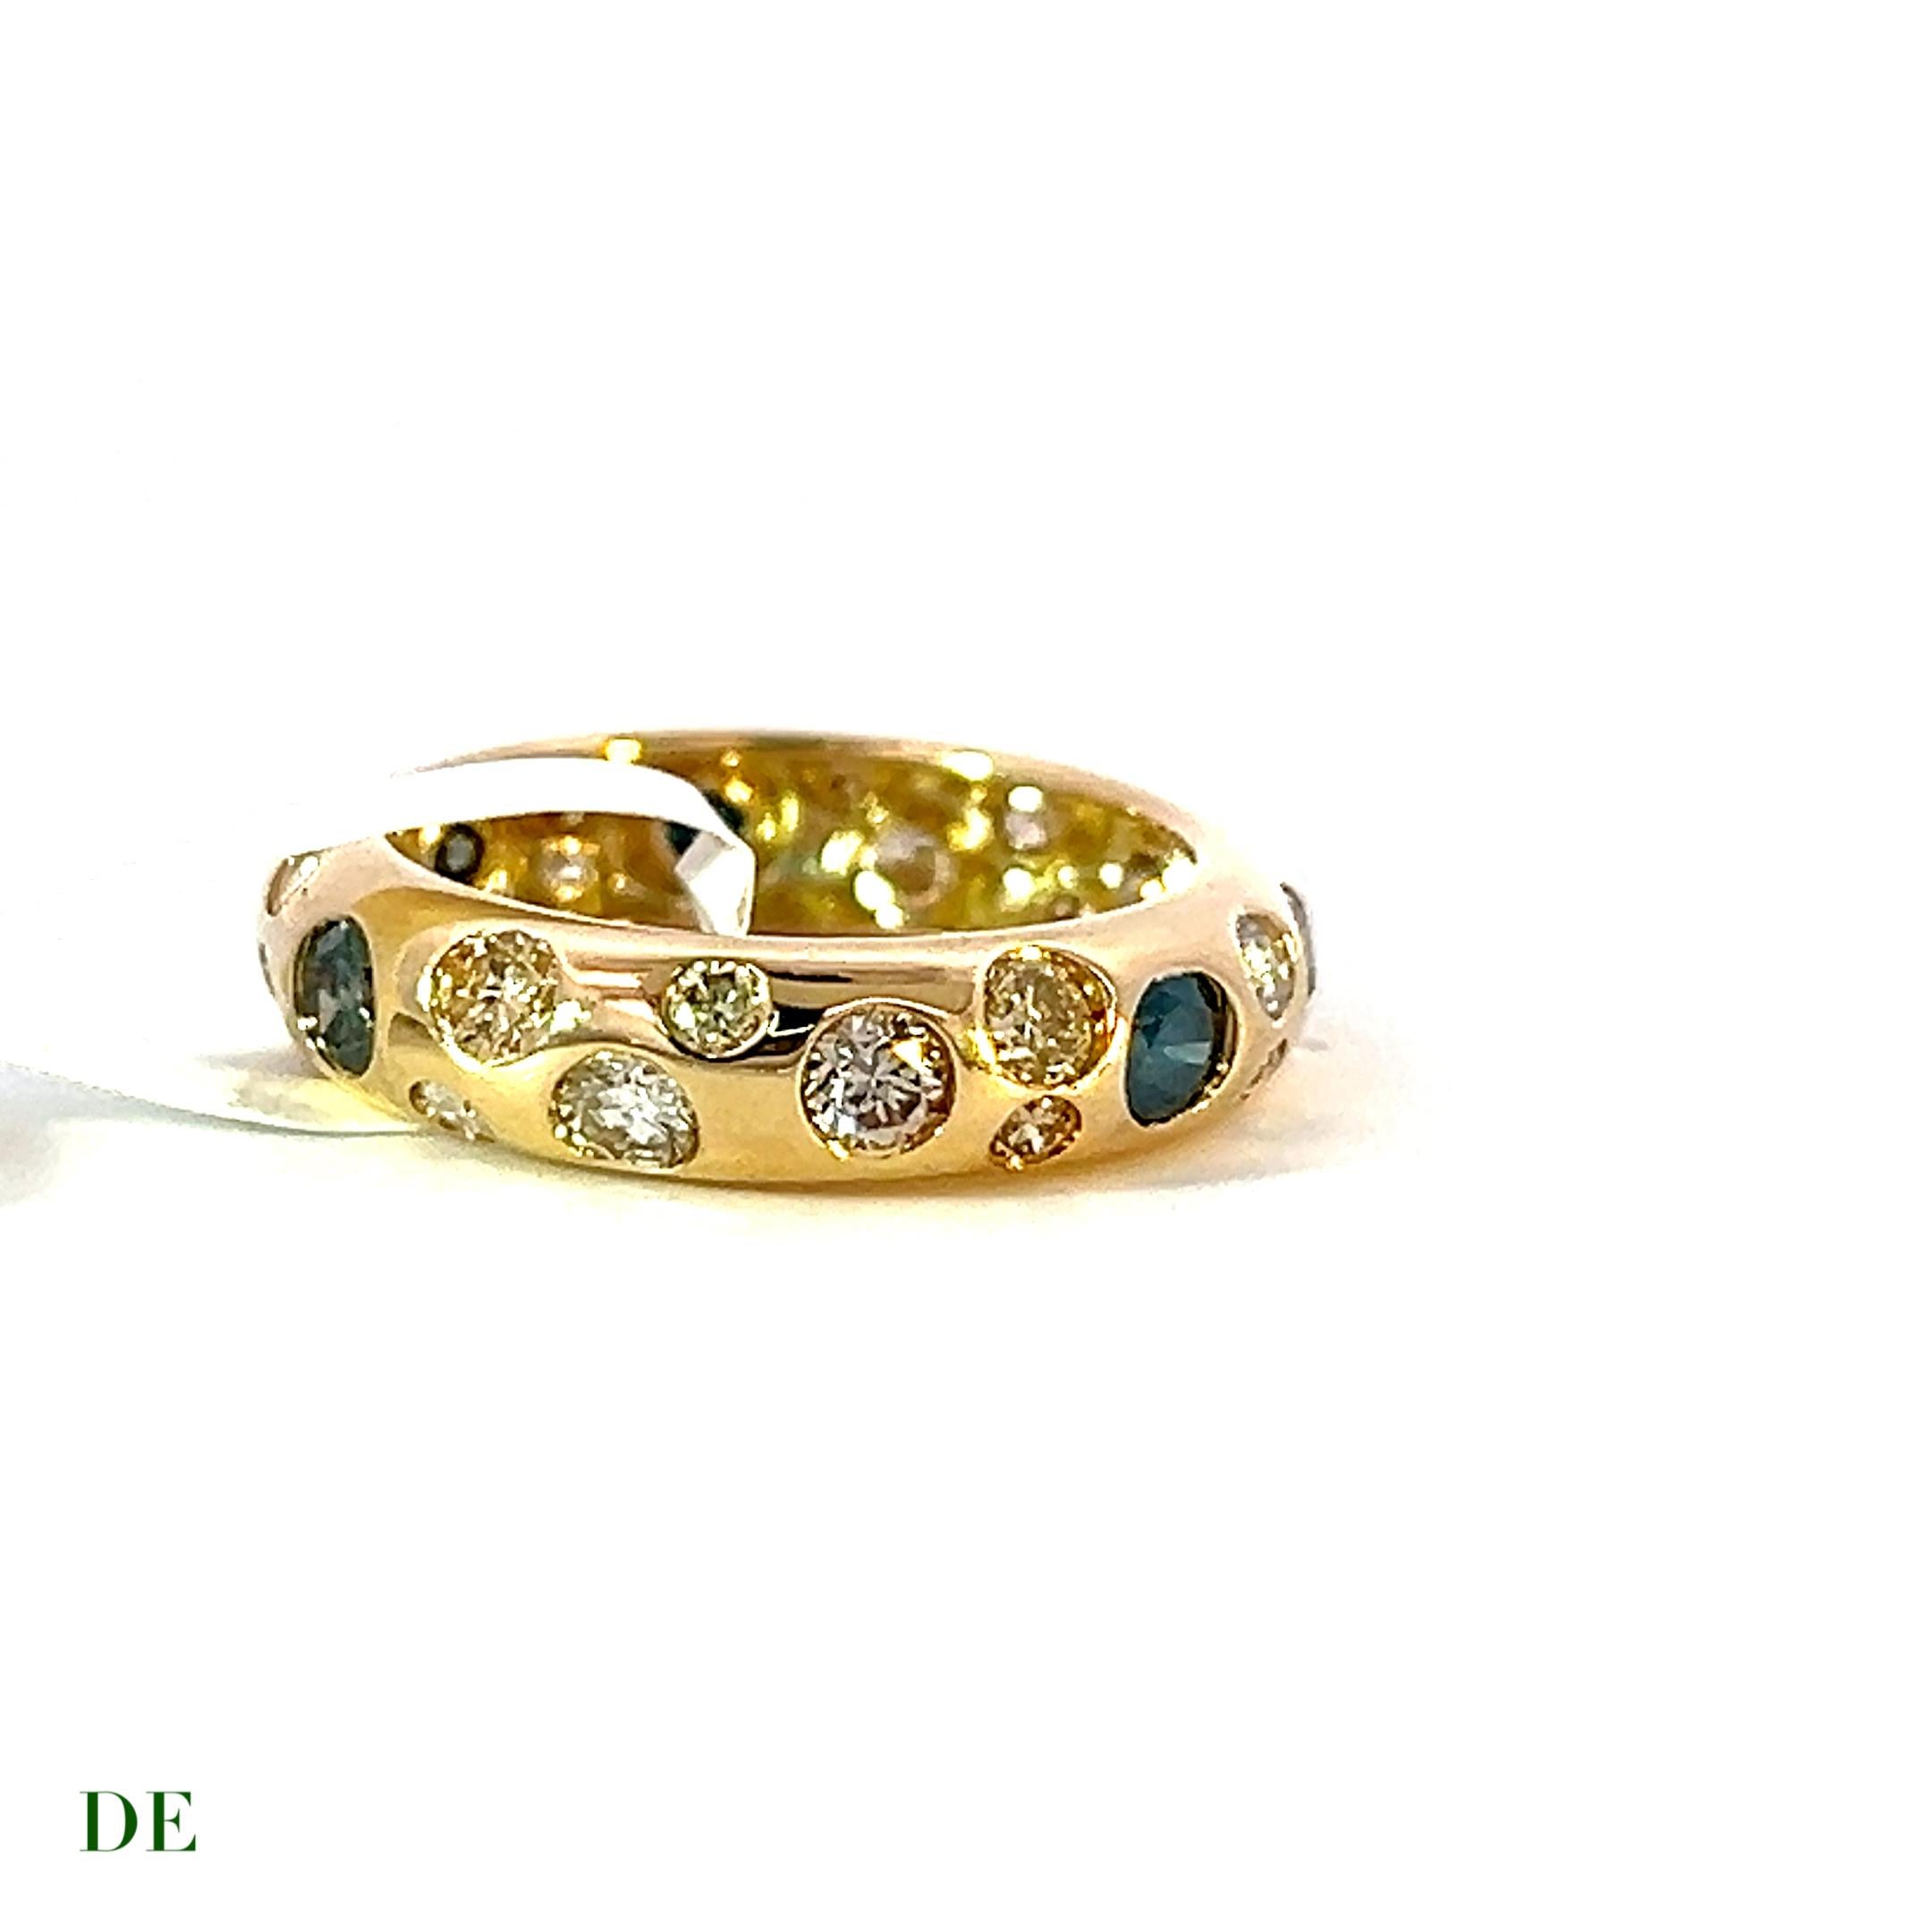 Exklusive 14k Gelbgold 1,92 Karat Polkadot Fancy Color Diamond Band Ring

Der exklusive Polkadot Fancy Color Diamond Band Ring aus 14k Gelbgold ist ein wahrhaft außergewöhnliches Schmuckstück, das Opulenz und Individualität vereint. Dieser